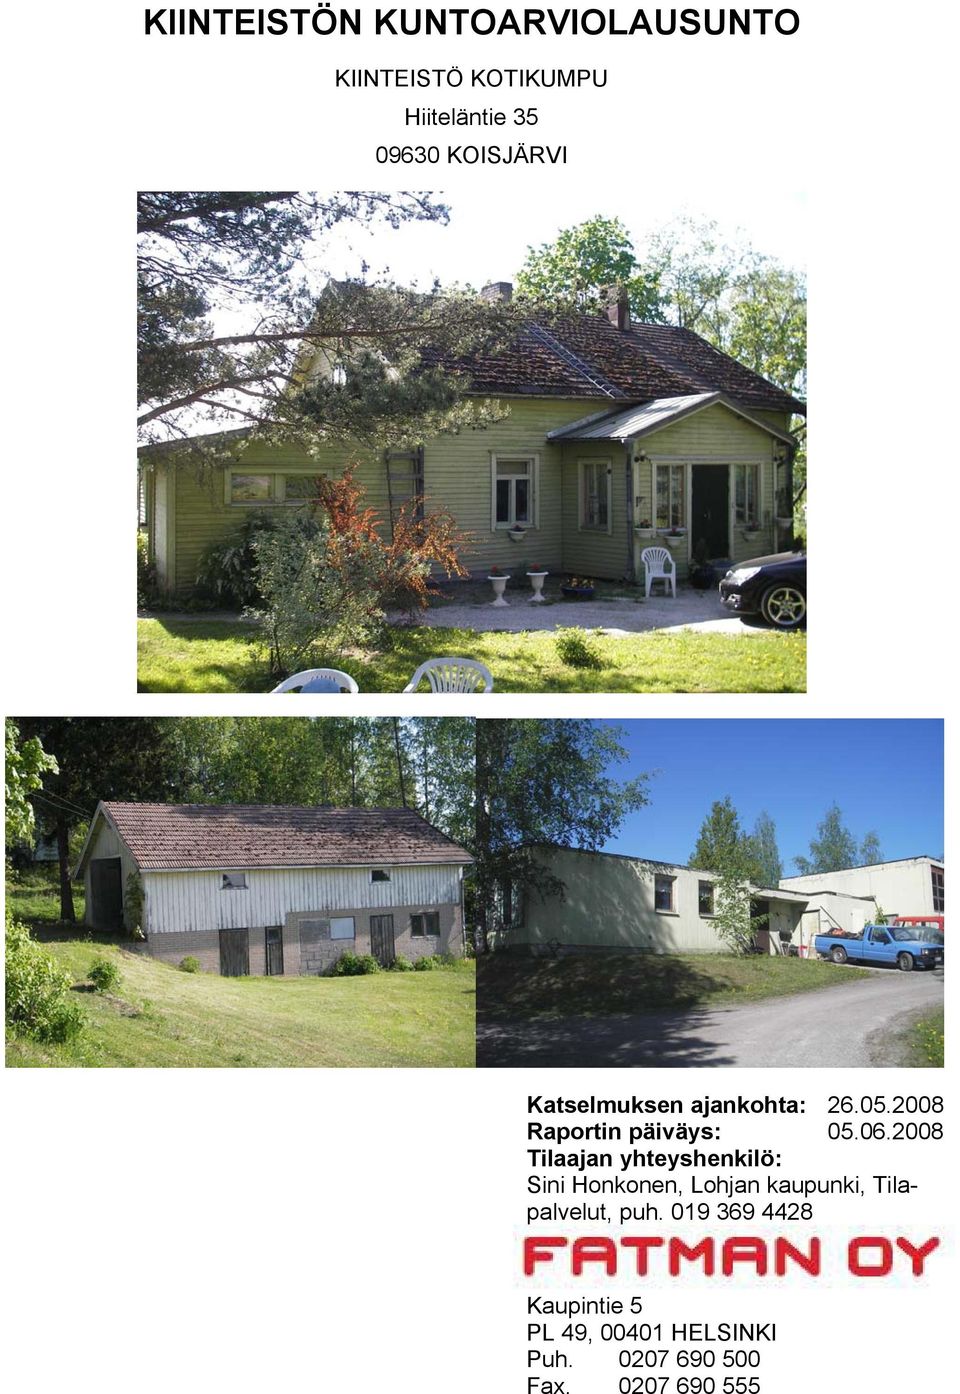 2008 Tilaajan yhteyshenkilö: Sini Honkonen, Lohjan kaupunki, Tilapalvelut,